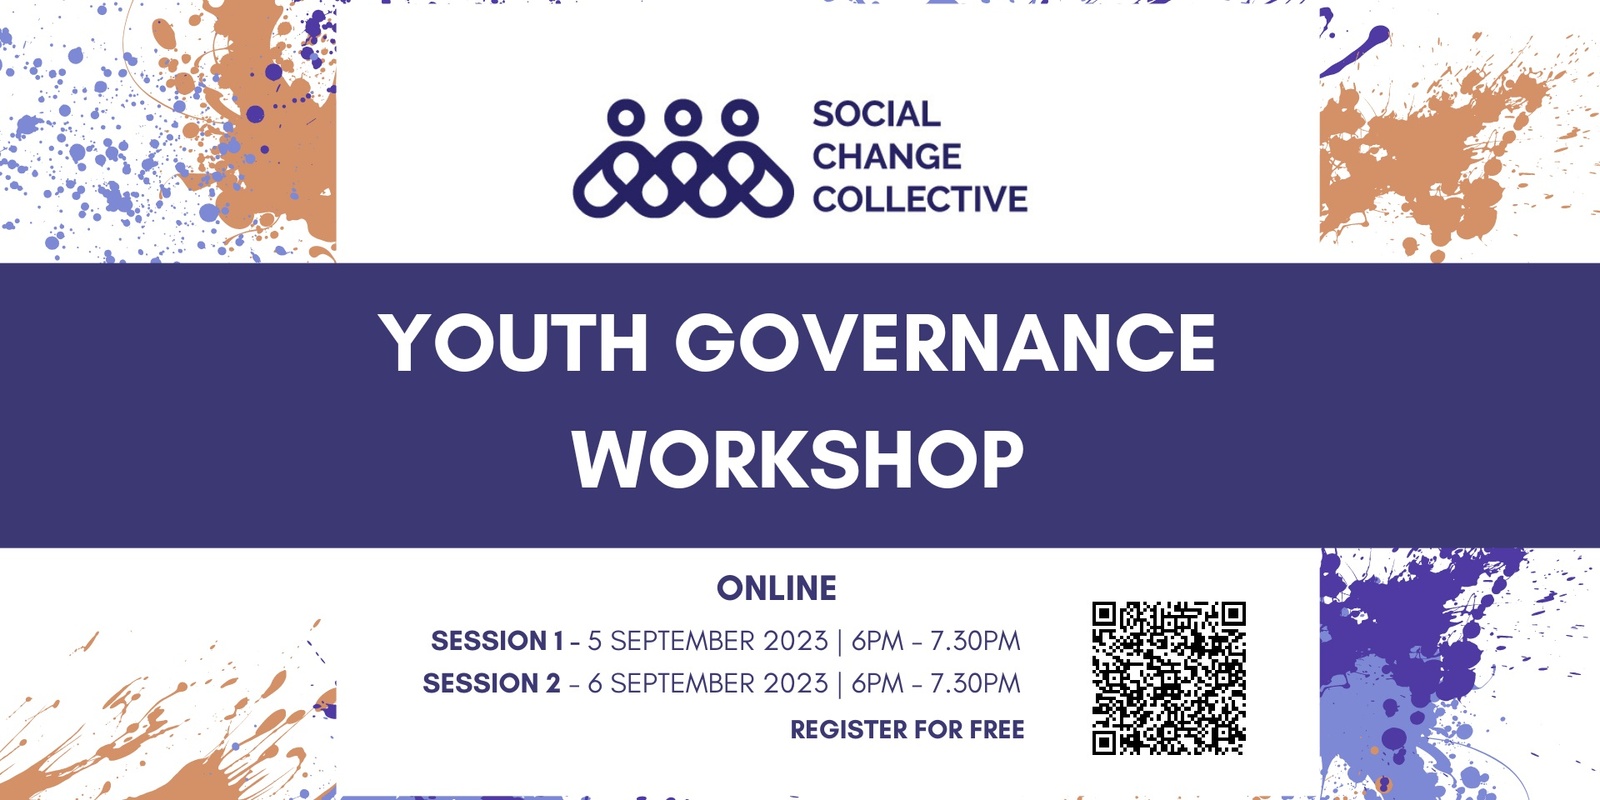 Banner image for Online Youth Governance Workshop